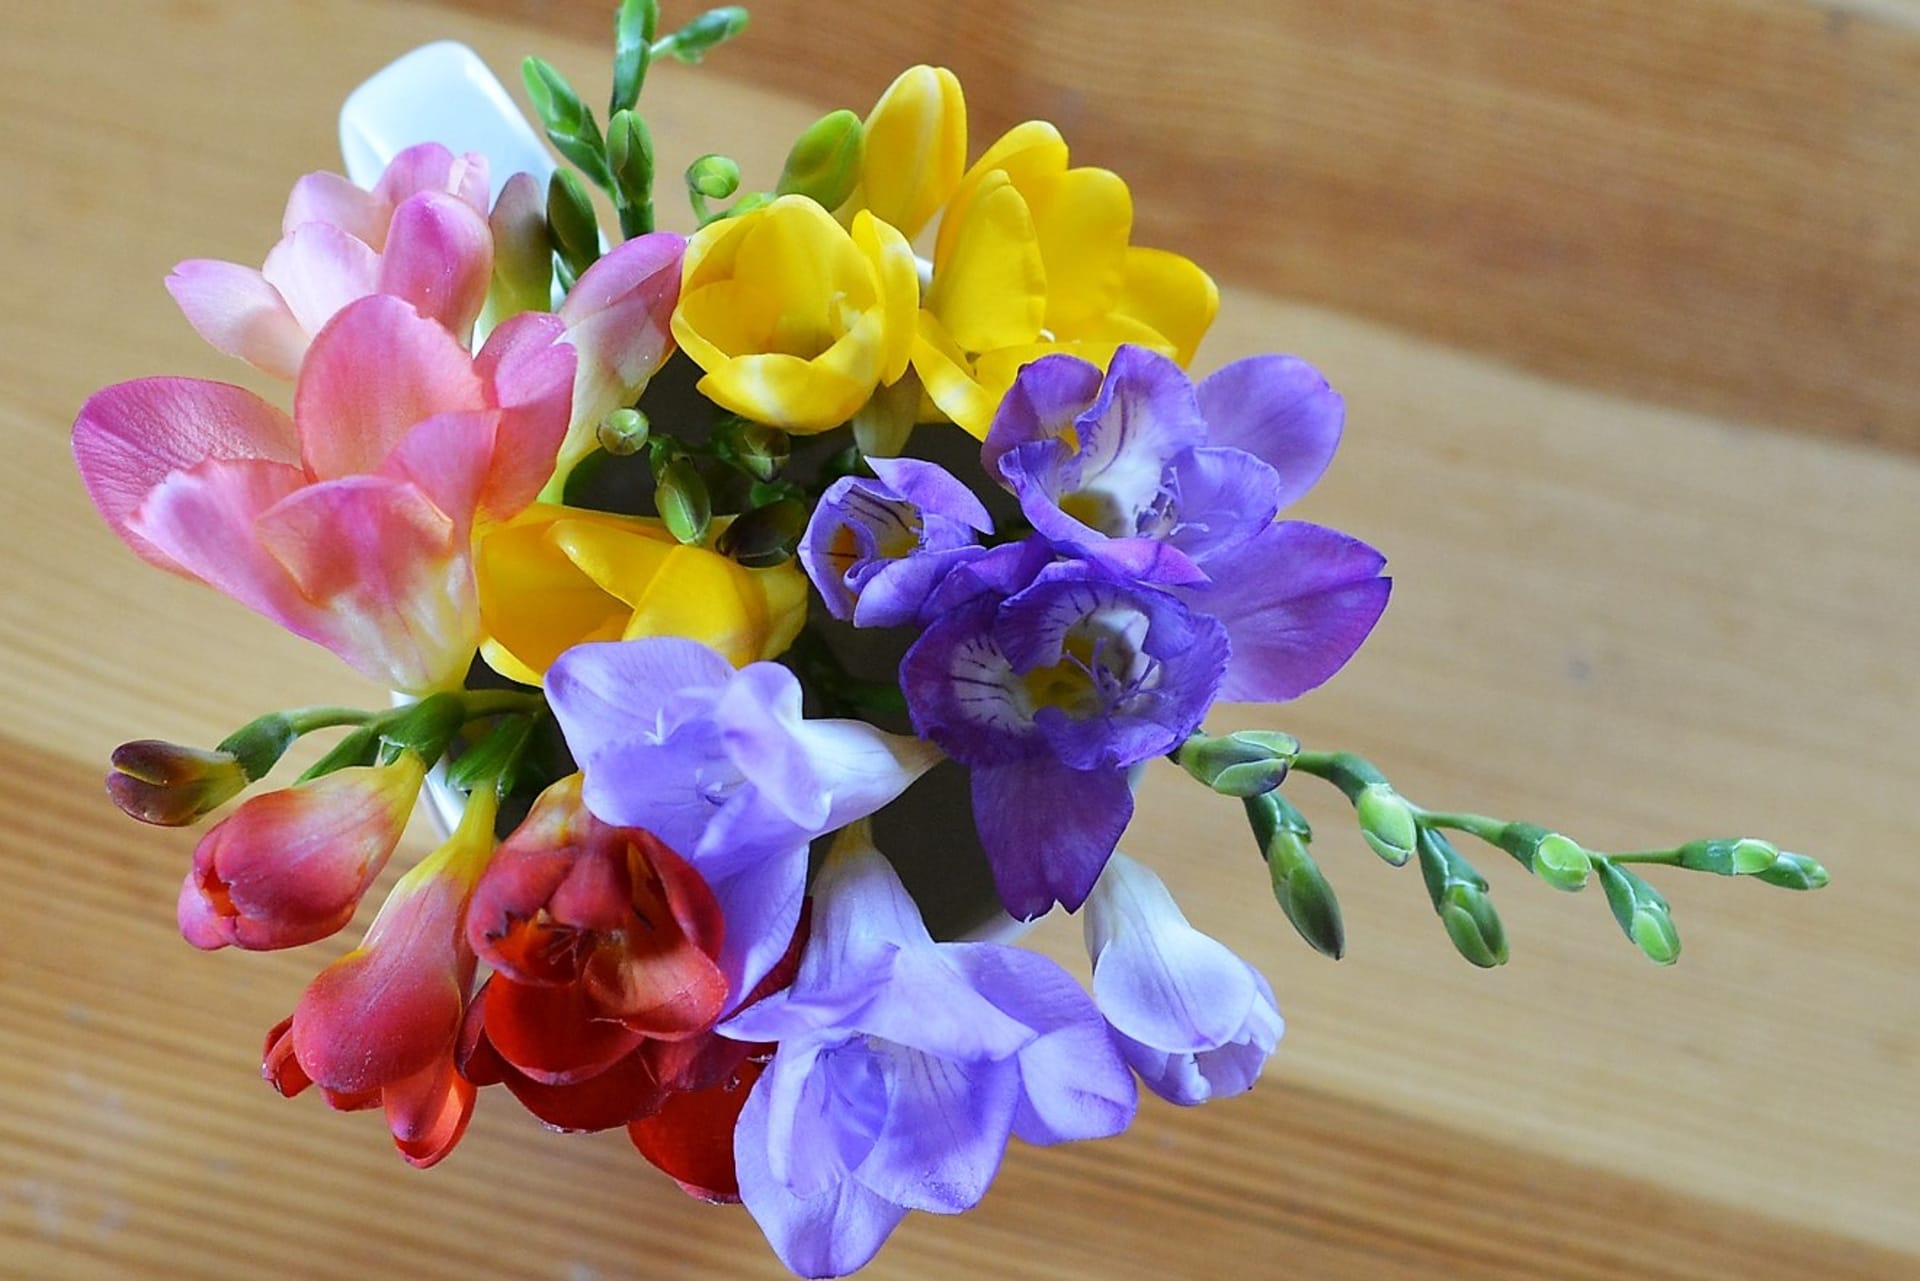 Proč doma pěstovat květiny 17Pohodu a klid přinášejí do domu zejména růže (Rosa), kosatce (Iris) a luční kvítí, dobrou náladu a pozitivní myšlenky vyvolávají frézie (Freesia).